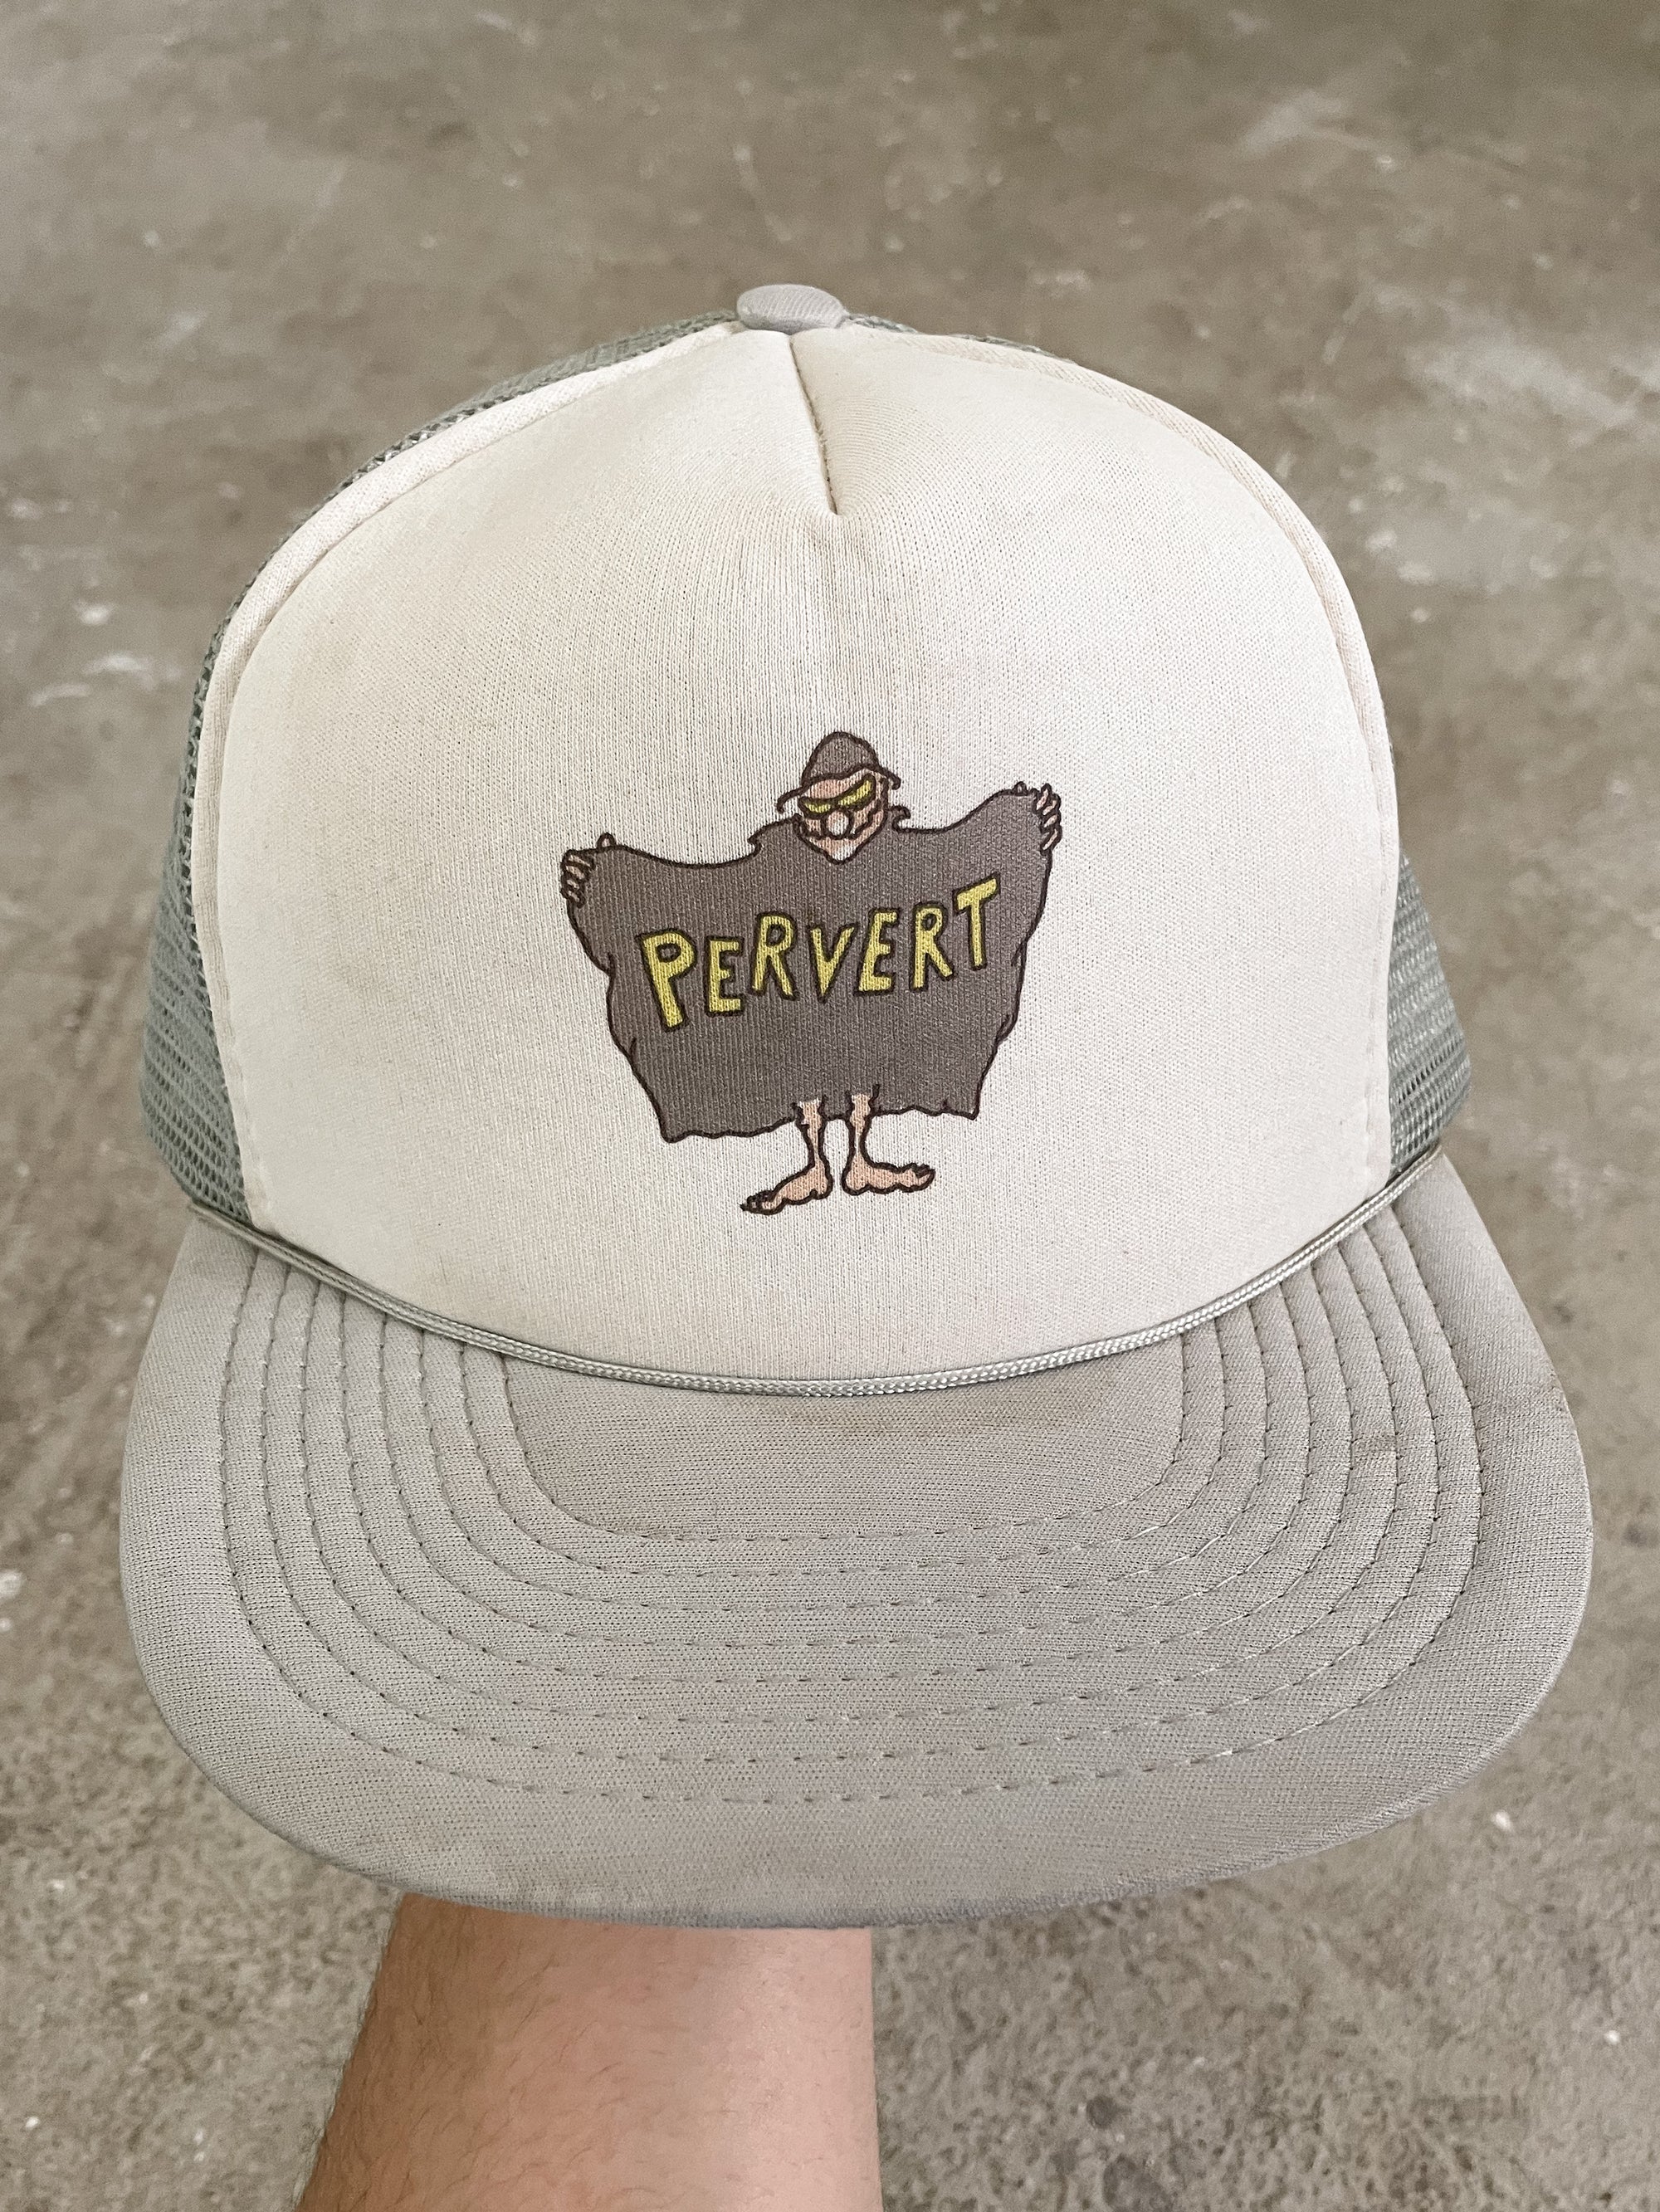 1990s “Pervert” Trucker Hat